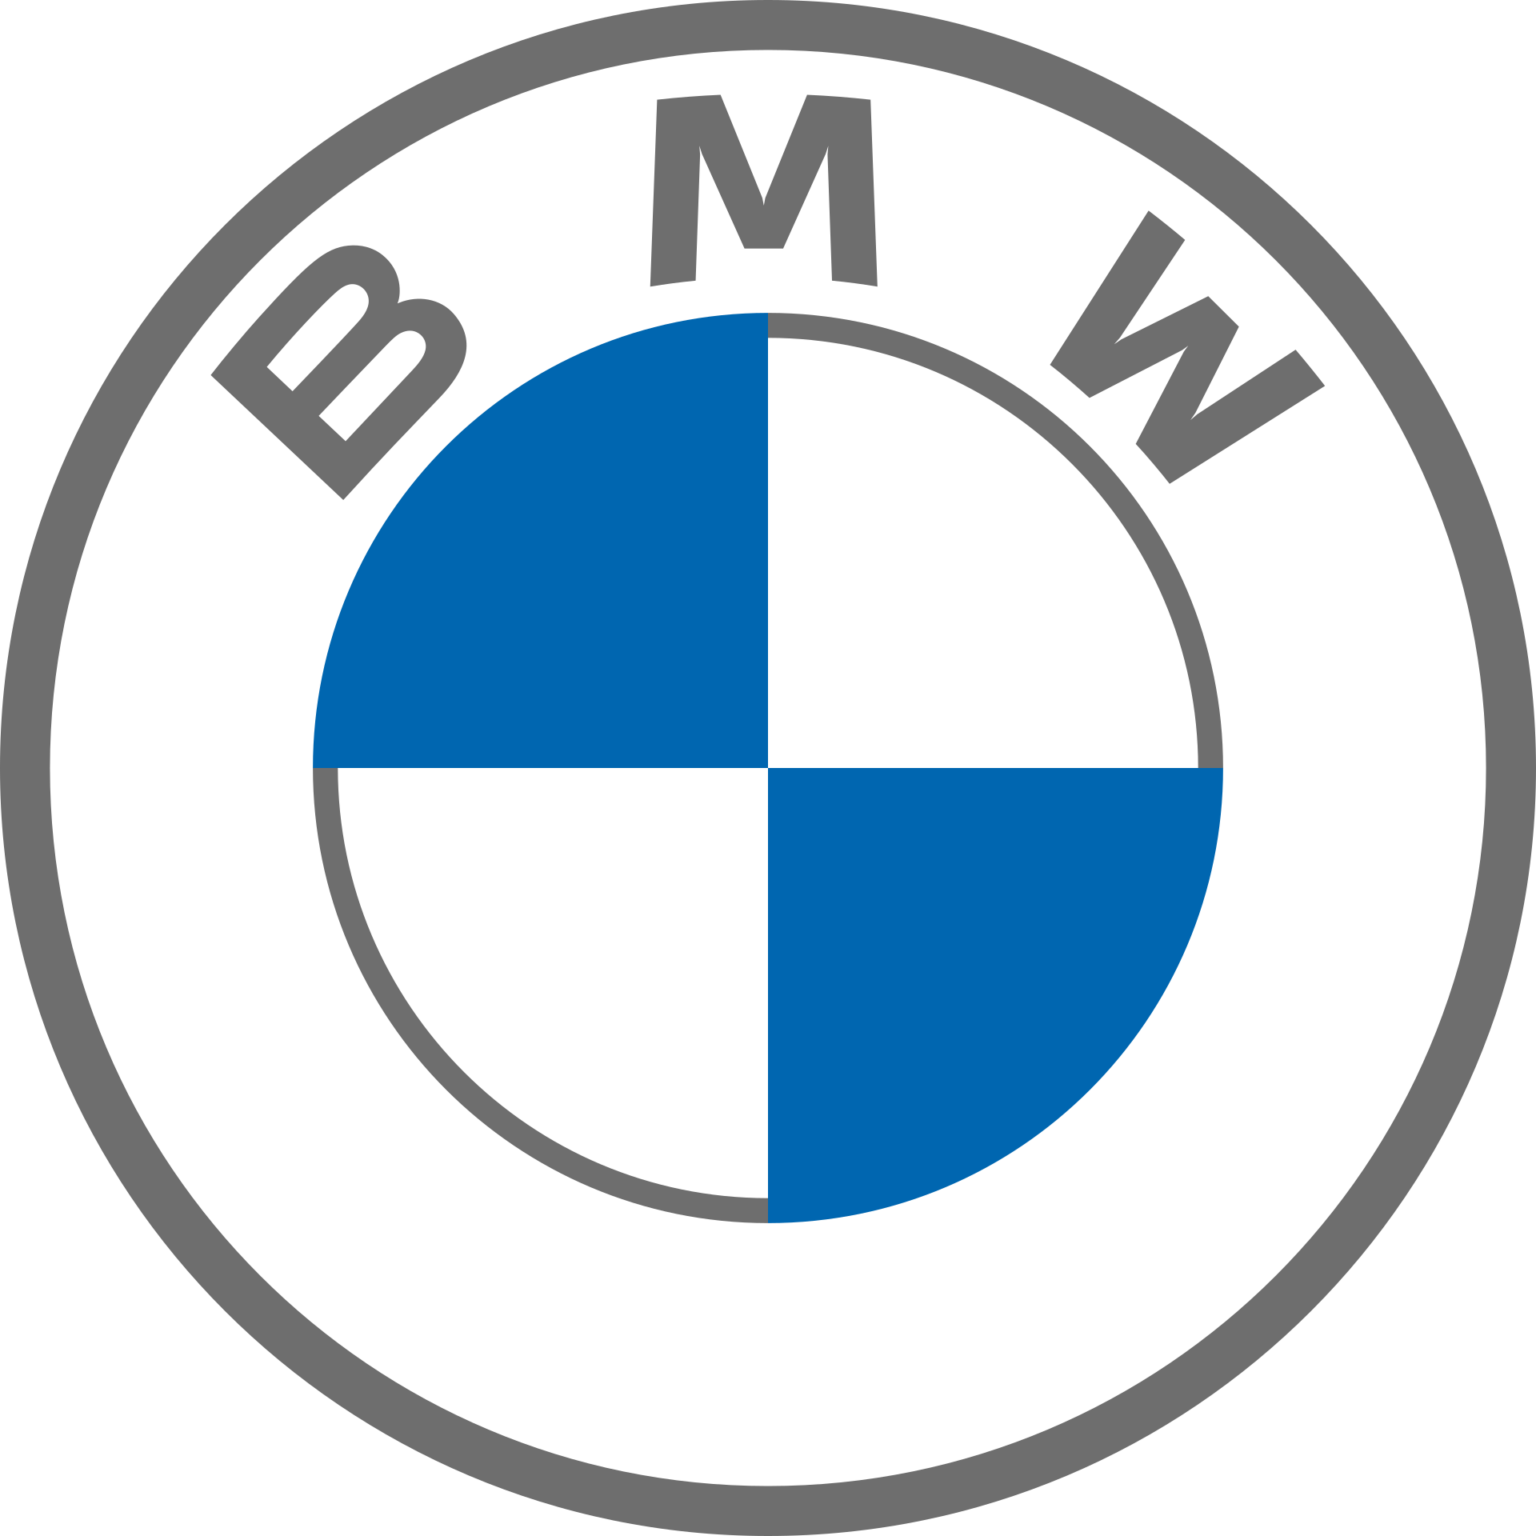 2020 BMW New Logo HD Wallpaper – Noolyo.com